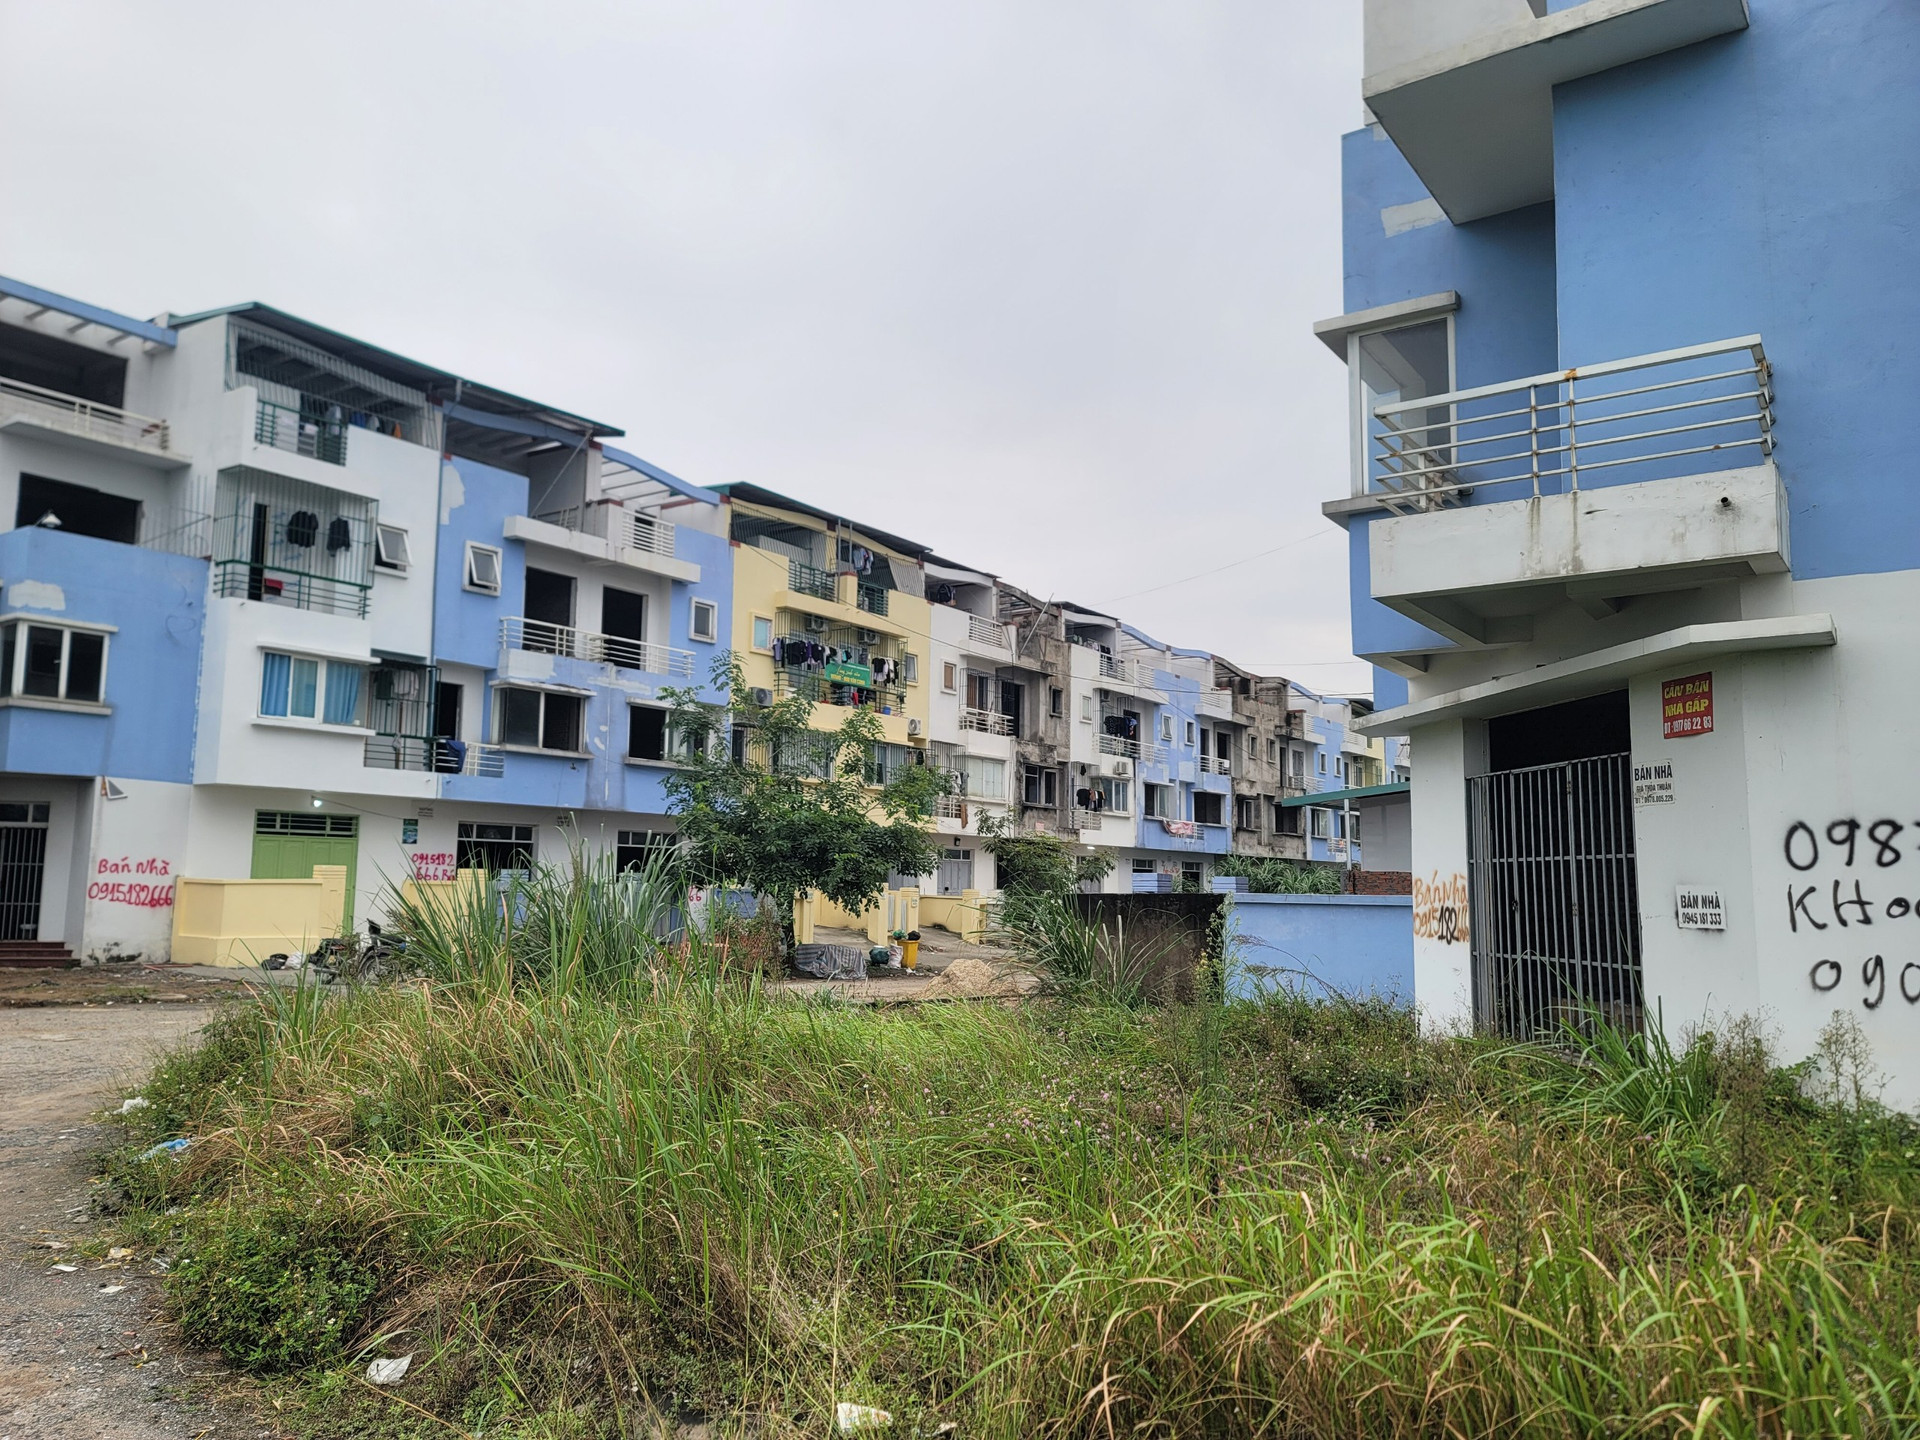 Khu đô thị Vân Canh được khởi công xây dựng từ năm 2008 và chia làm 2 giai đoạn.Giai đoạn 1 bắt đầu bàn giao cho người mua nhà từ năm 2012. Nhưng nhiều nhà bỏ hoang chưa được đưa vào sử dụng khiến khu đô thị trở nên nhếch nhác, xuống cấp.